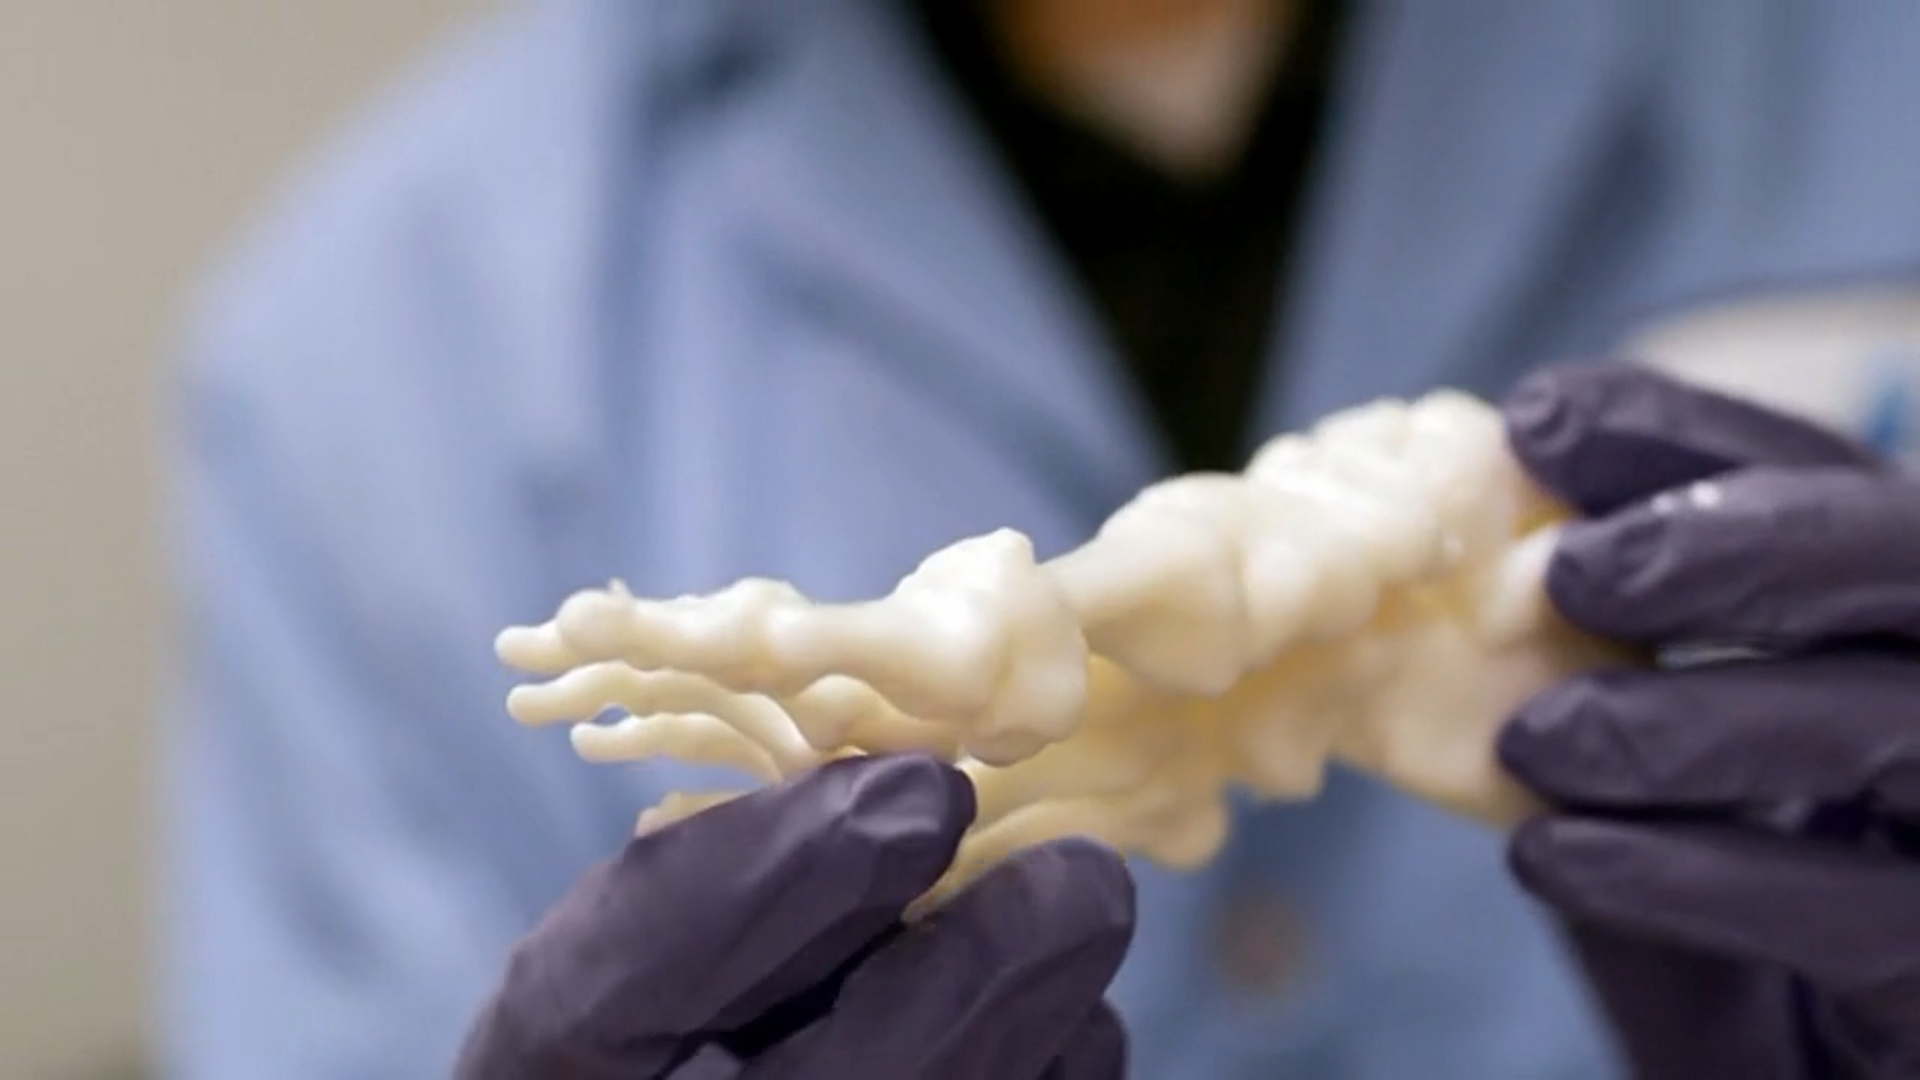 A 3D printed anatomical model by PrinterPrezz